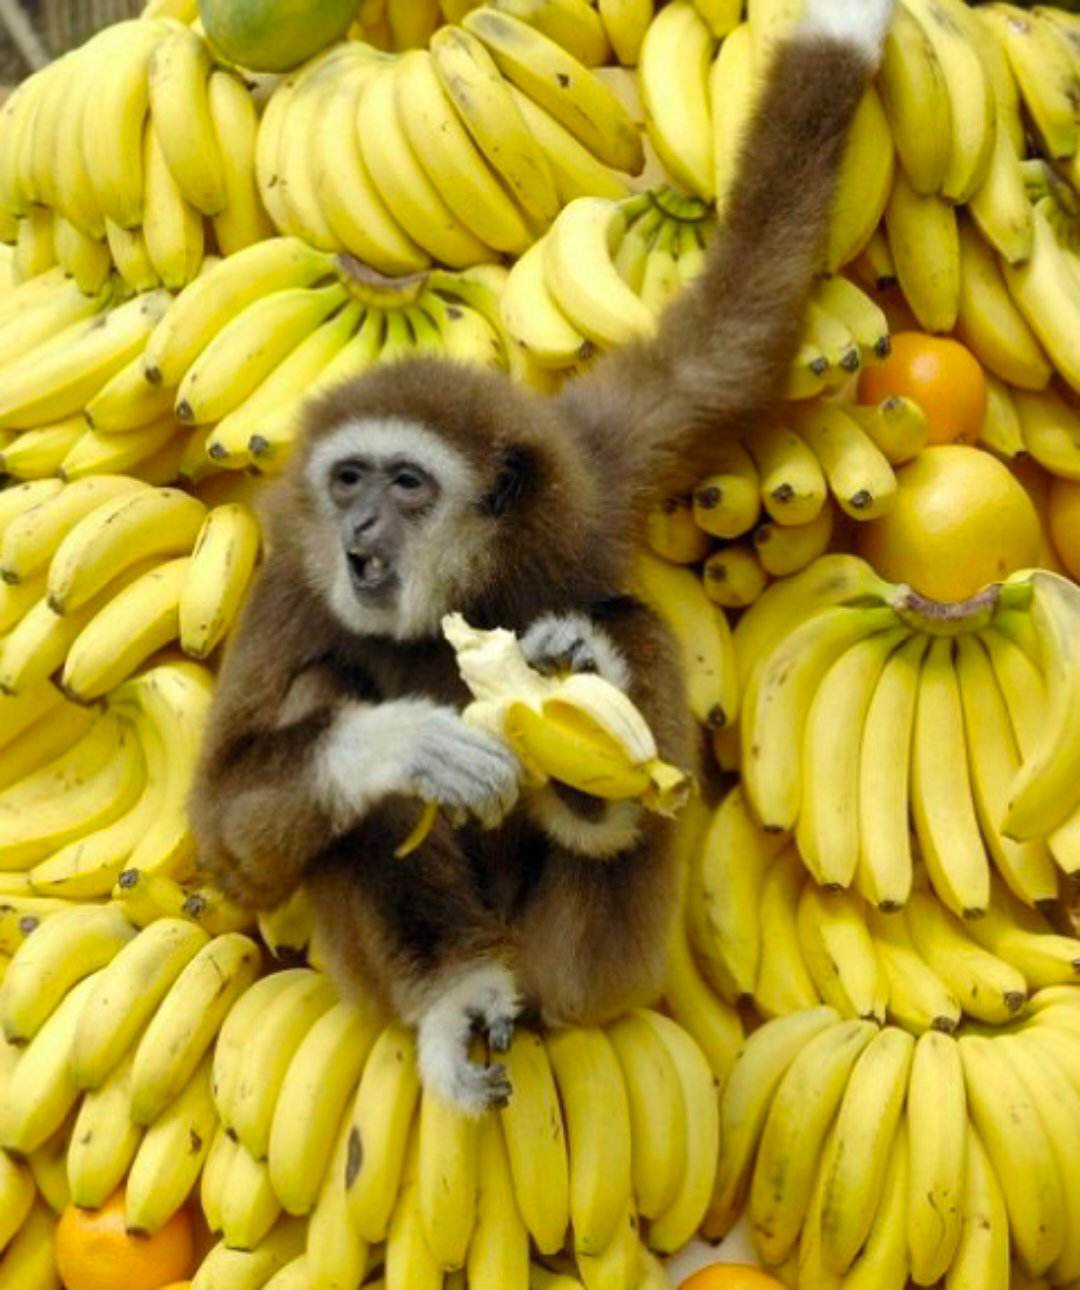 لا تحاول إقناع القرد بأن التفاح ألذ من الموز